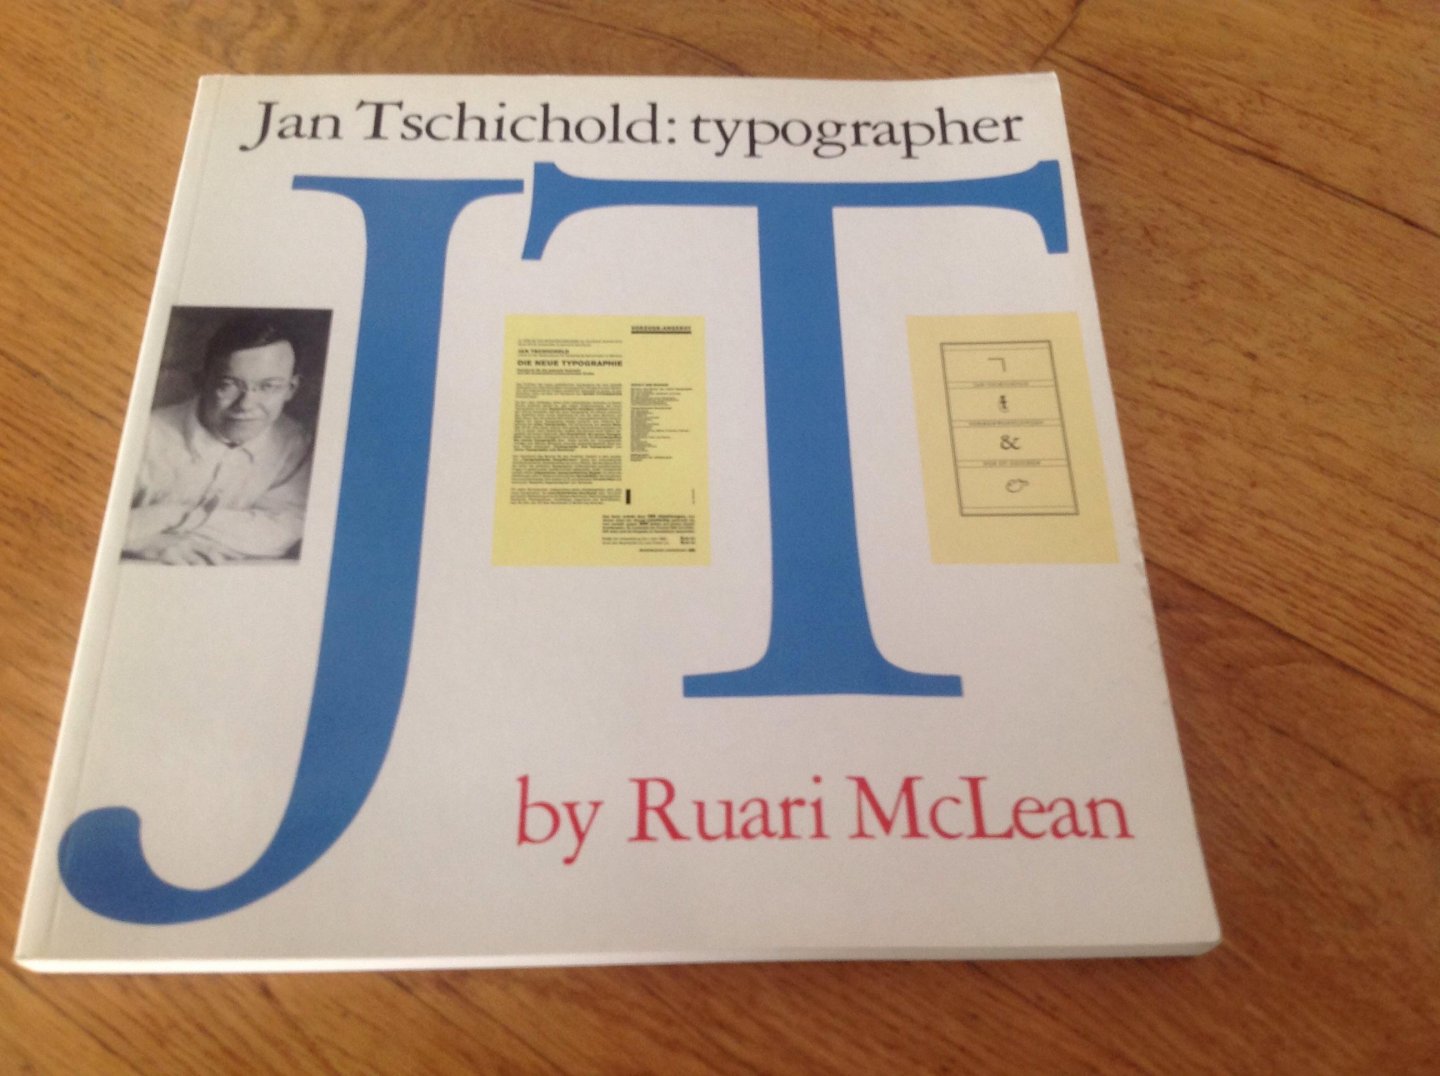 Roaring McLean - Jan Tschichold: typographer